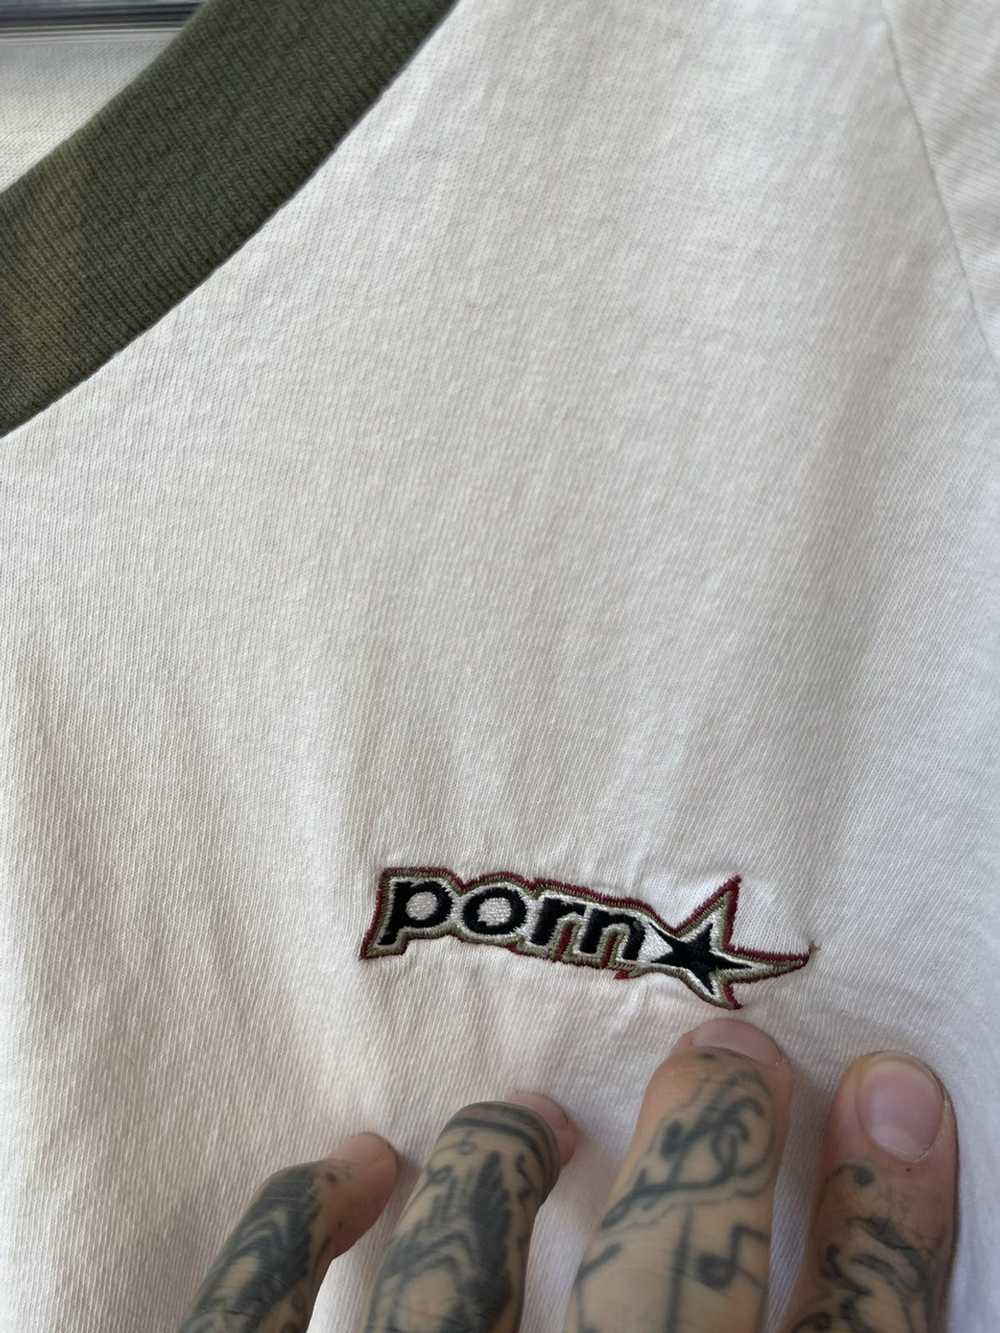 Vintage Vintage 90s PORNSTAR PORN STAR Shirt 4Gse… - image 3